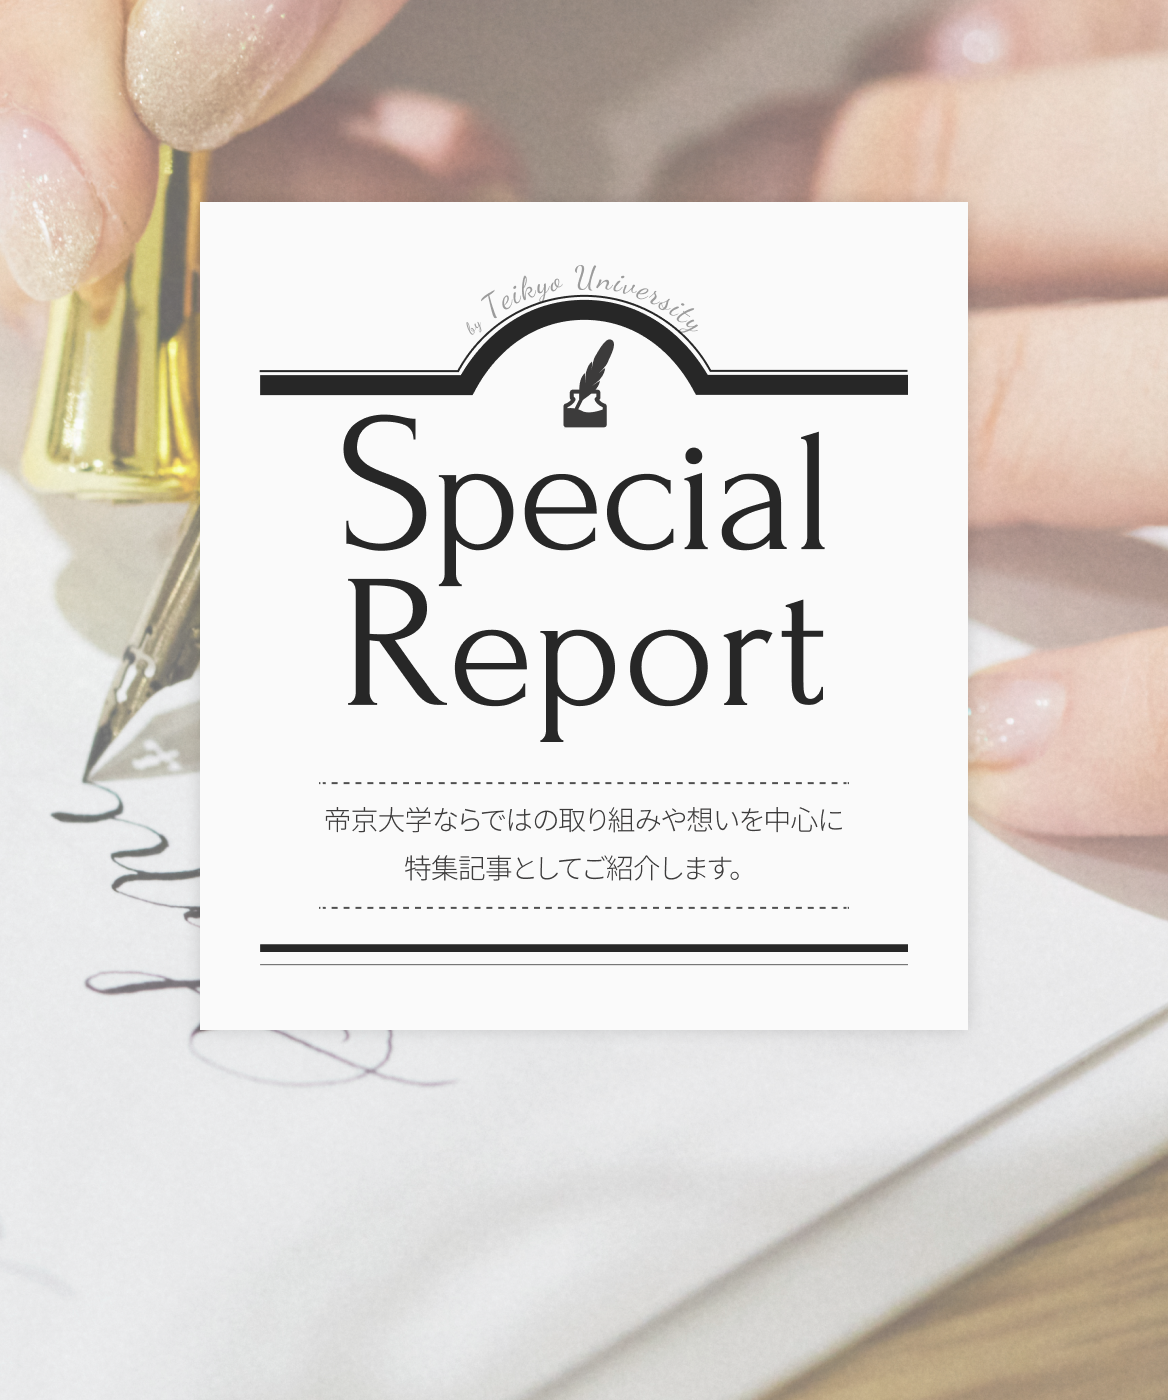 Special Report 帝京大学ならではの取り組みや想いを中心に特集記事としてご紹介します。